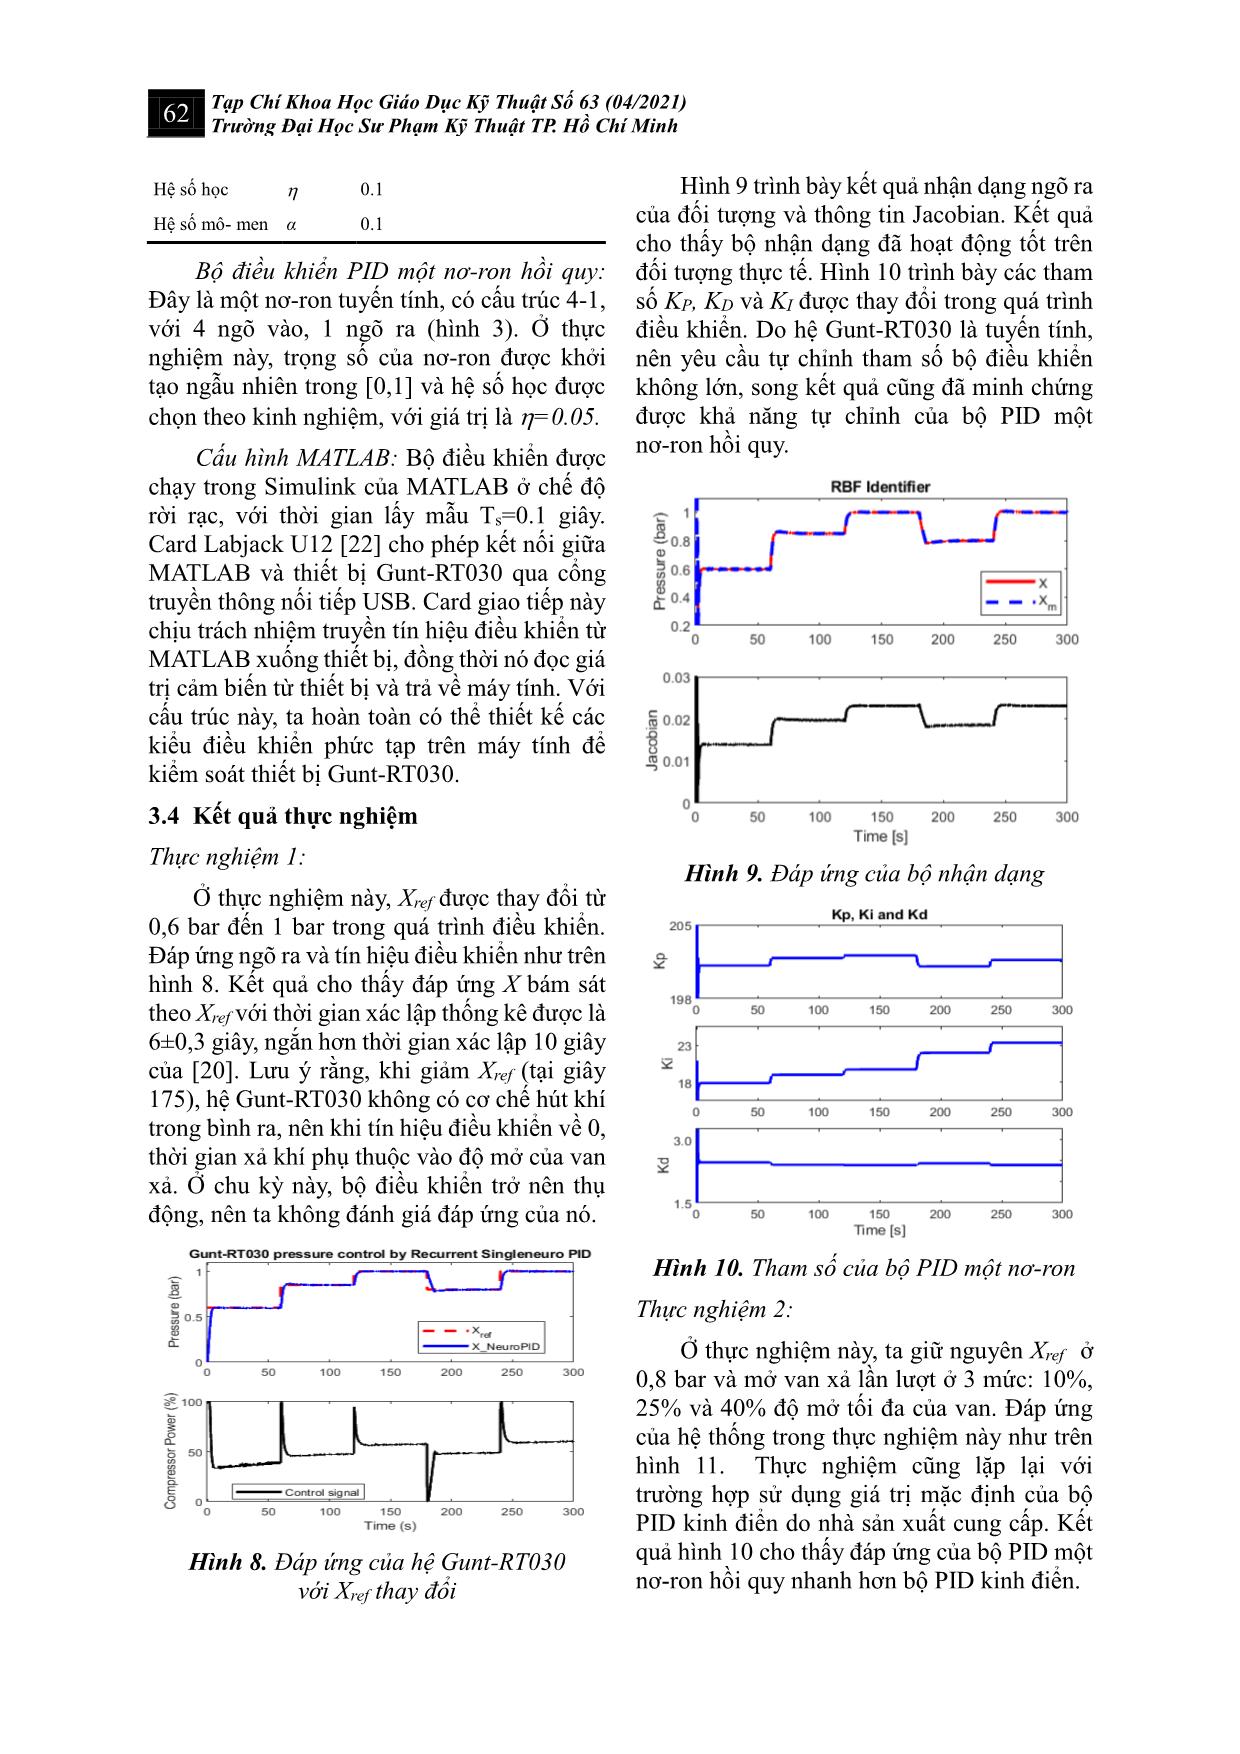 Điều khiển pid một nơ-Ron hồi quy hệ ổn định áp suất GUNT-RT030 trang 6